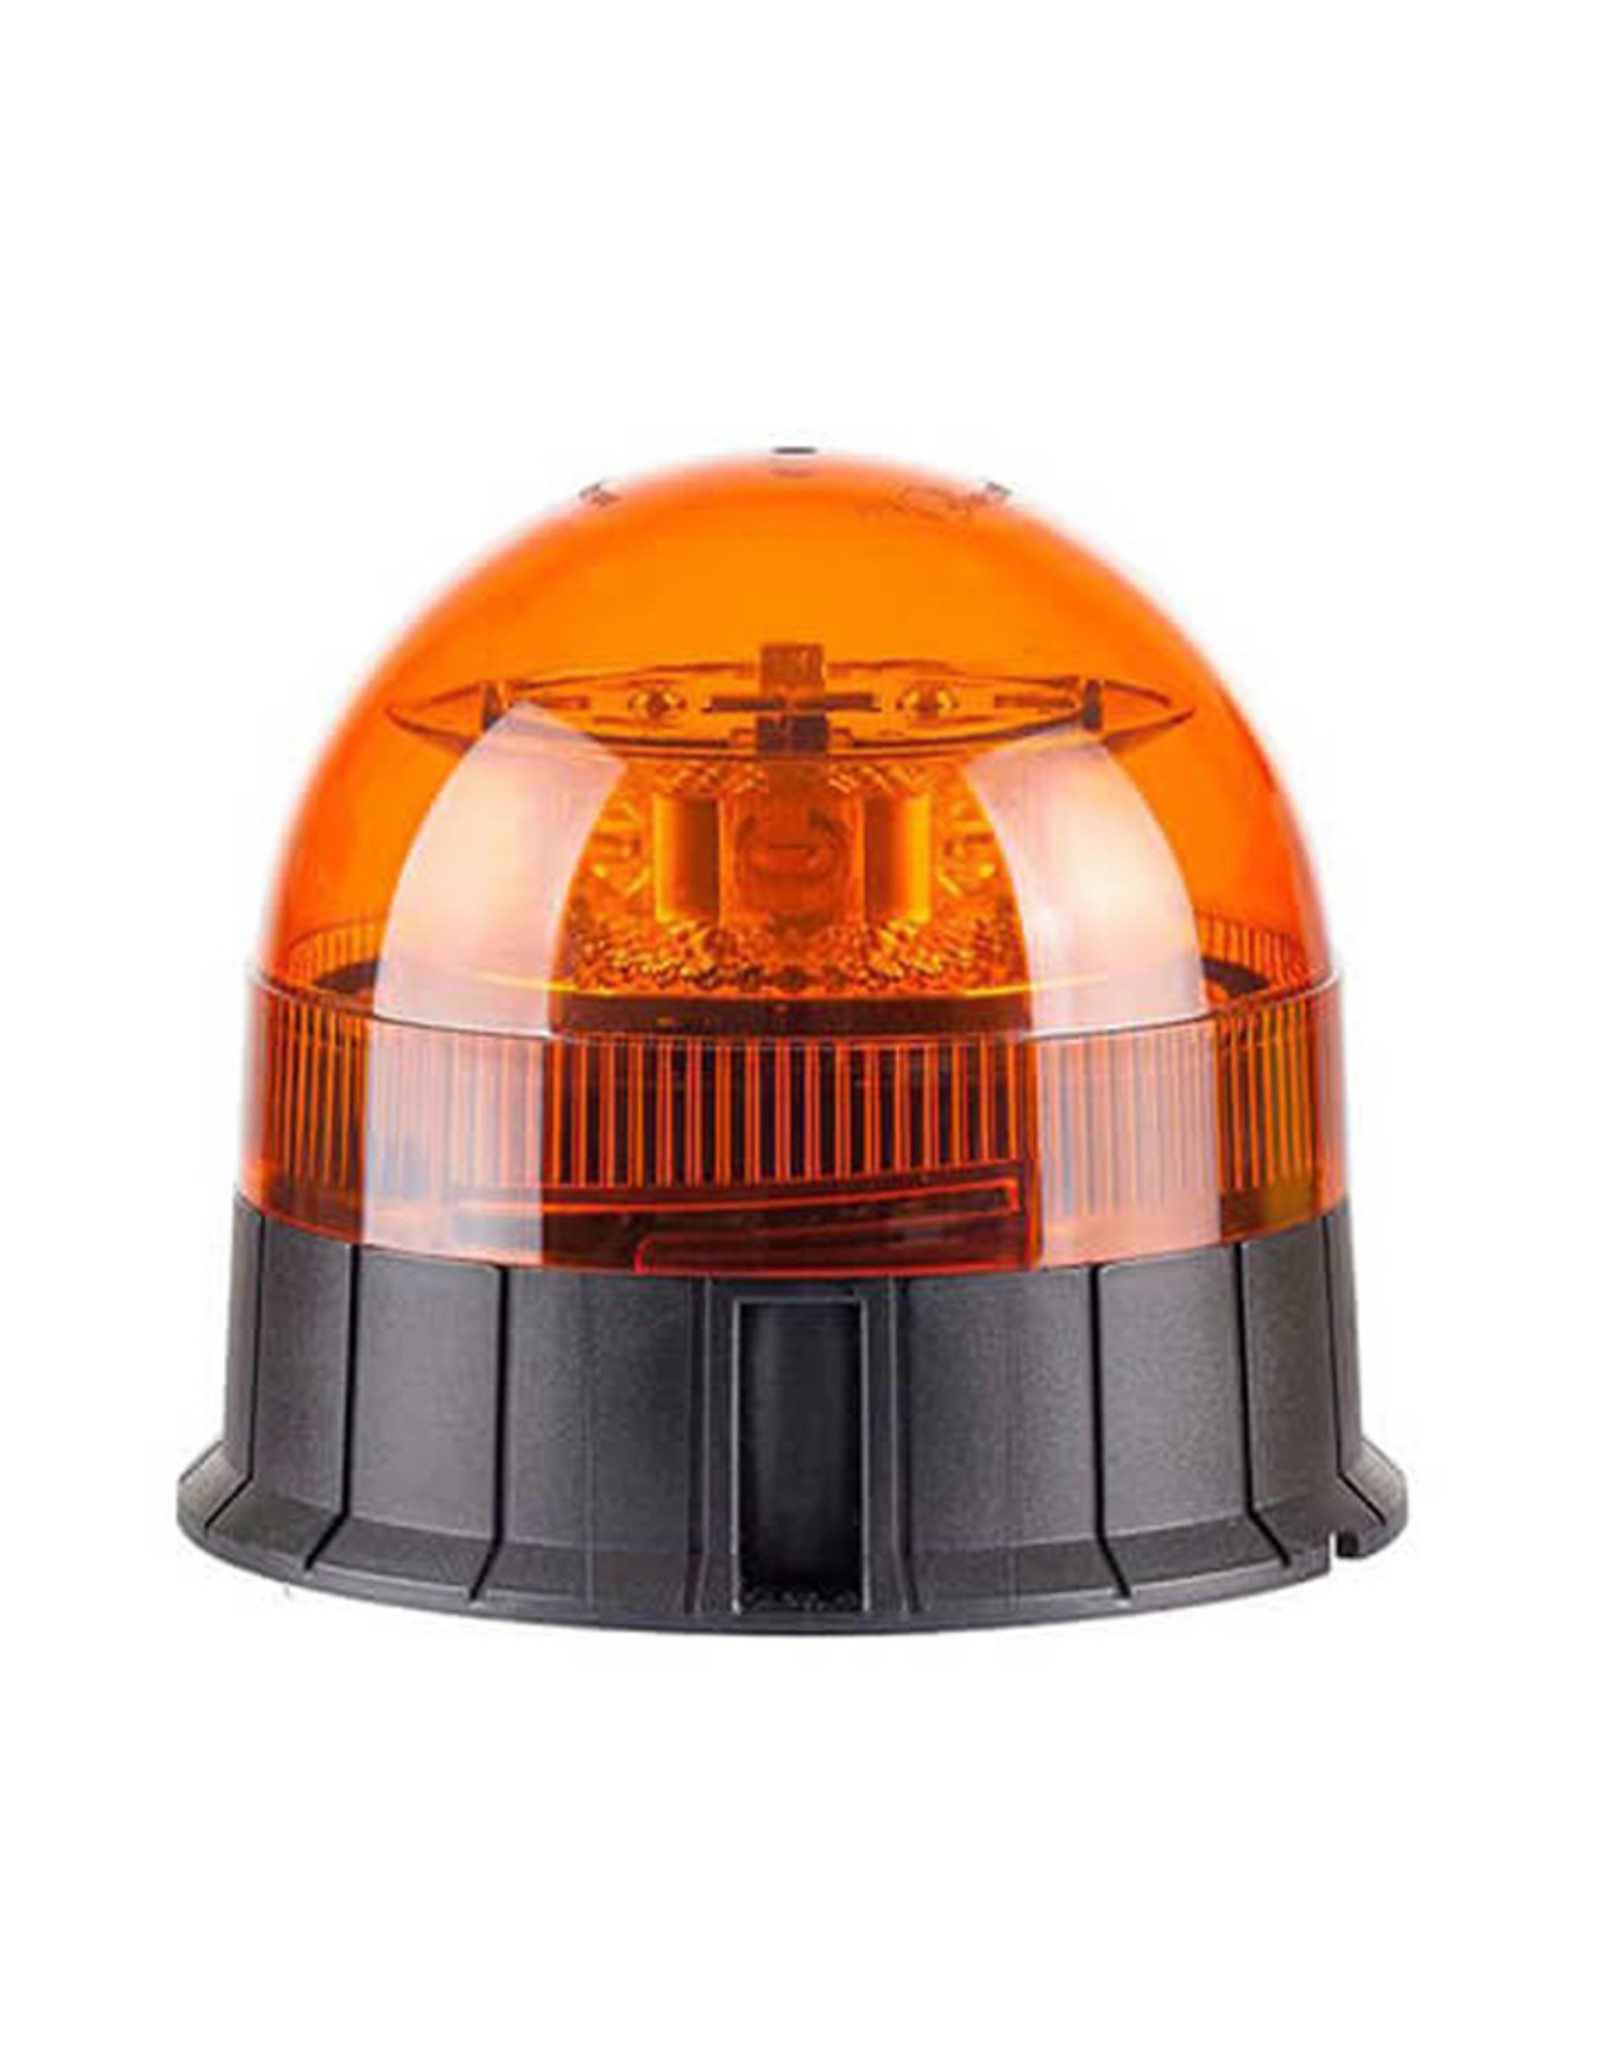 Rundumleuchte LED R65 Orange Magnet Saugnapfbefestigung